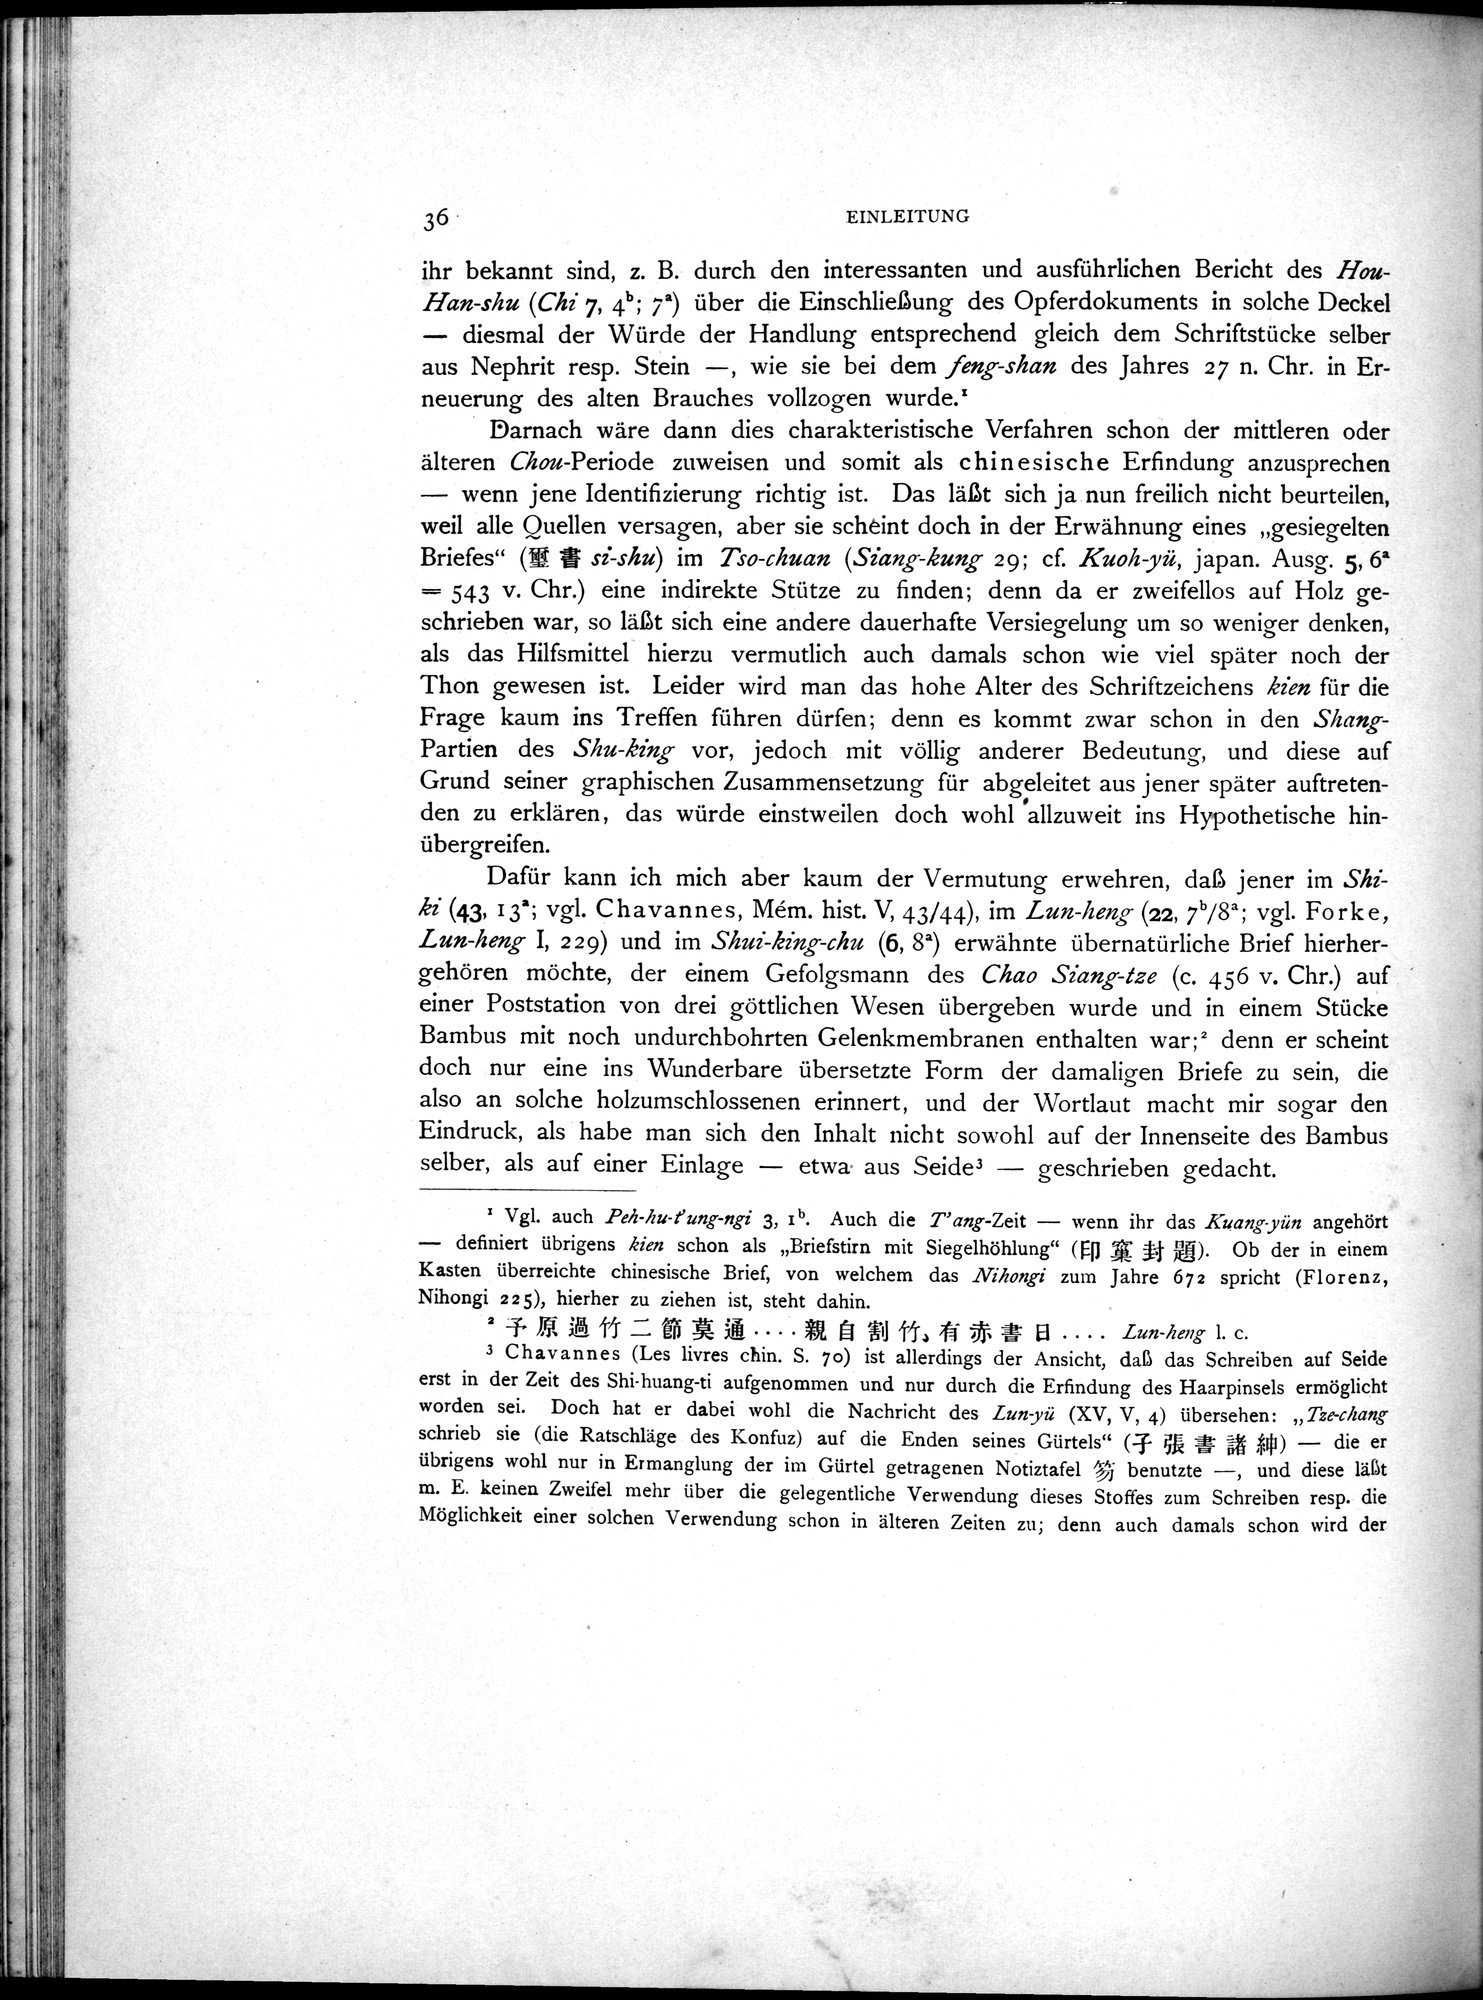 Die Chinesischen Handschriften- und sonstigen Kleinfunde Sven Hedins in Lou-lan : vol.1 / Page 60 (Grayscale High Resolution Image)